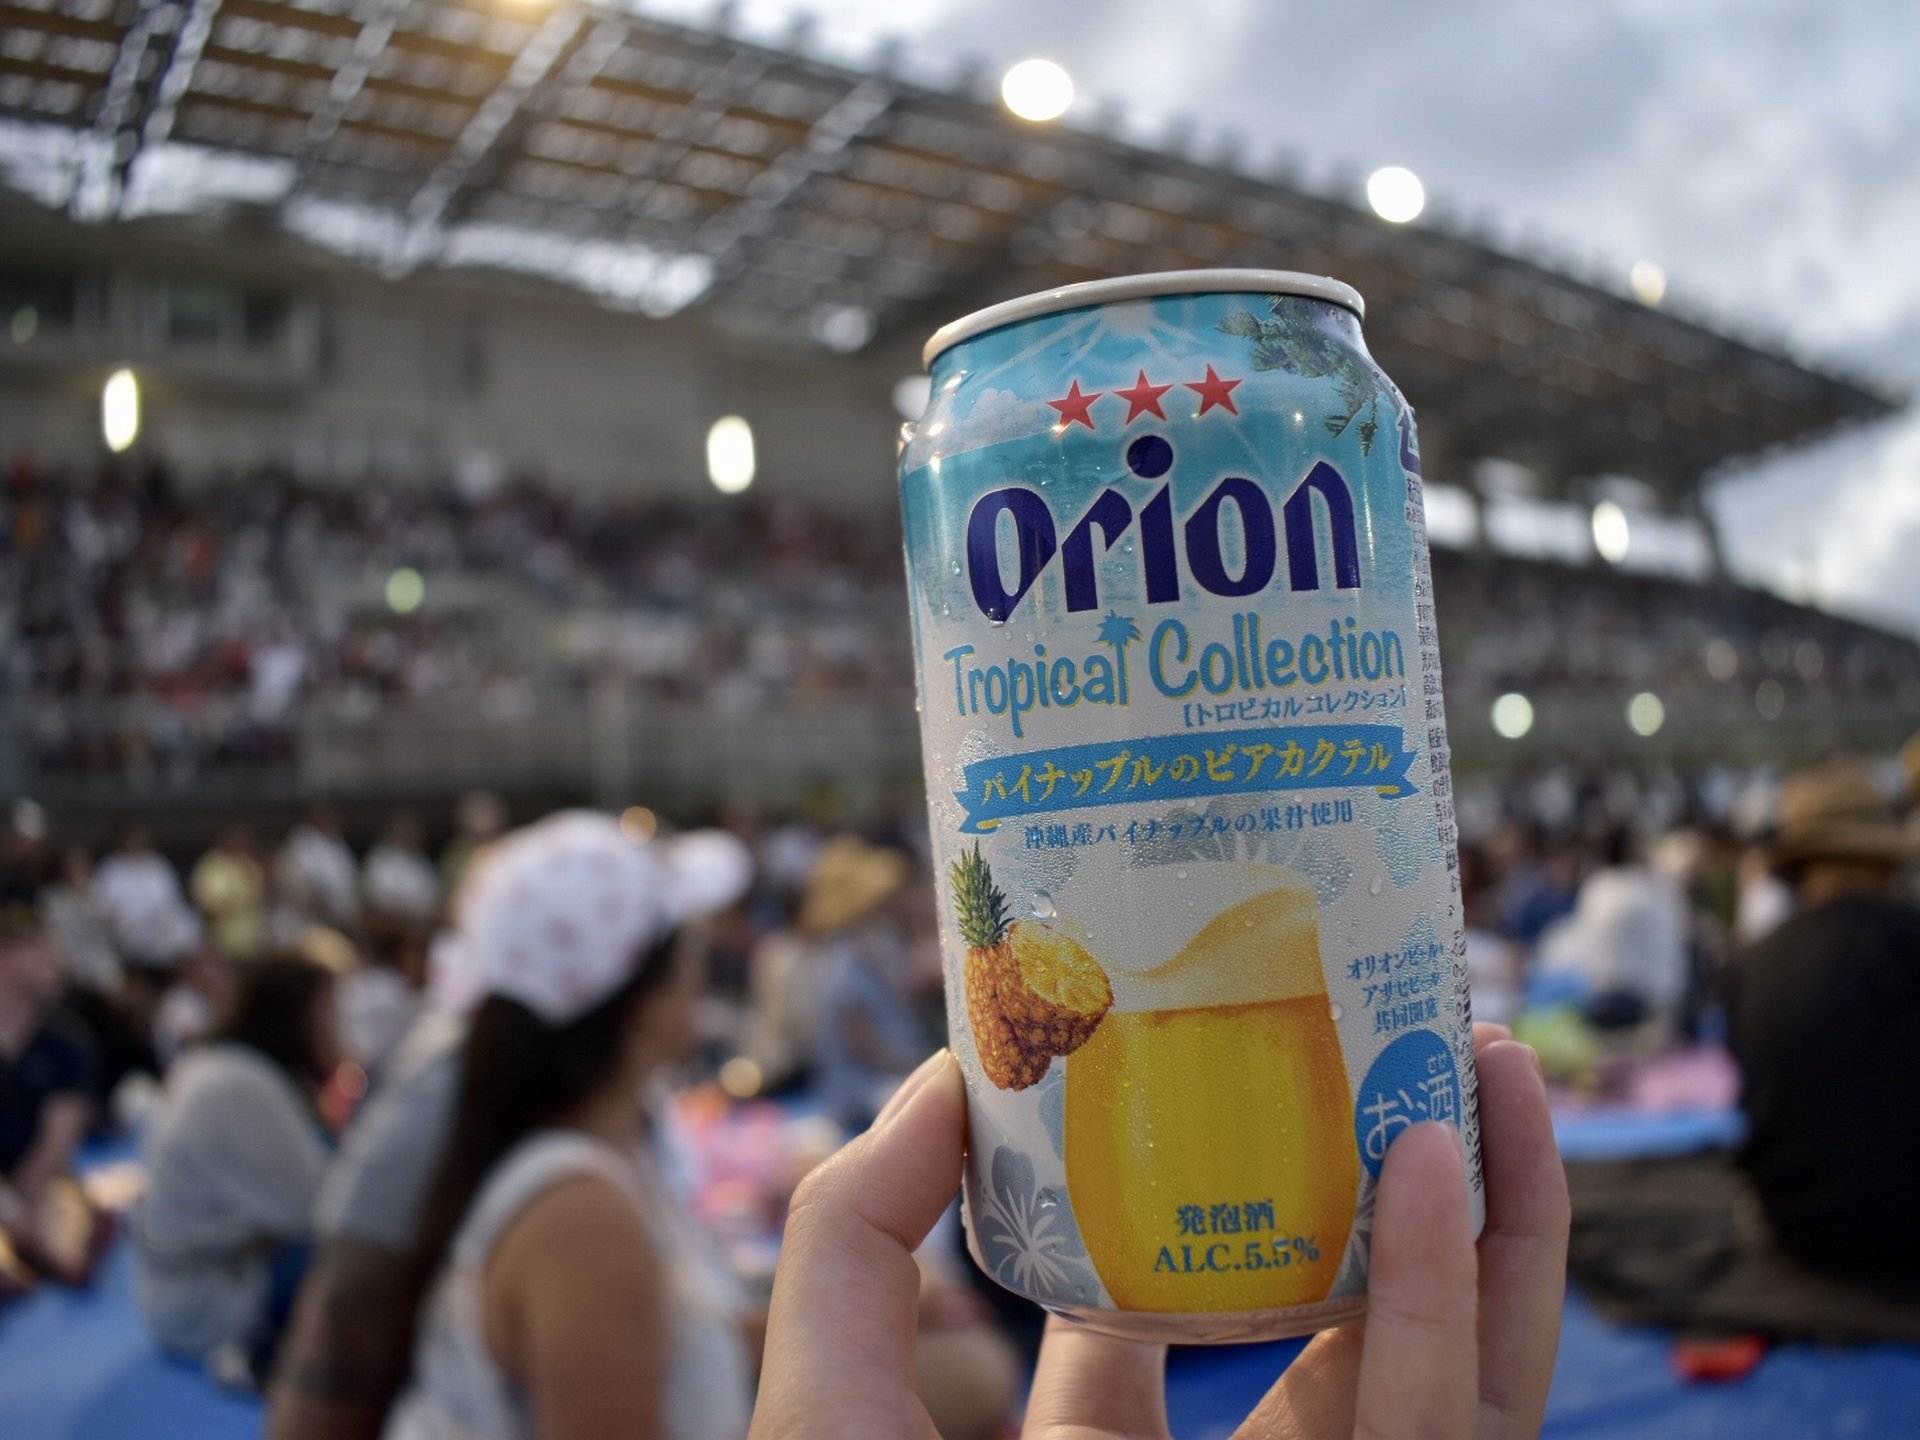 沖縄全島エイサー祭りとオリオンビアフェストへ！オリオンビール片手に豪華なライブと花火で盛り上がろう！